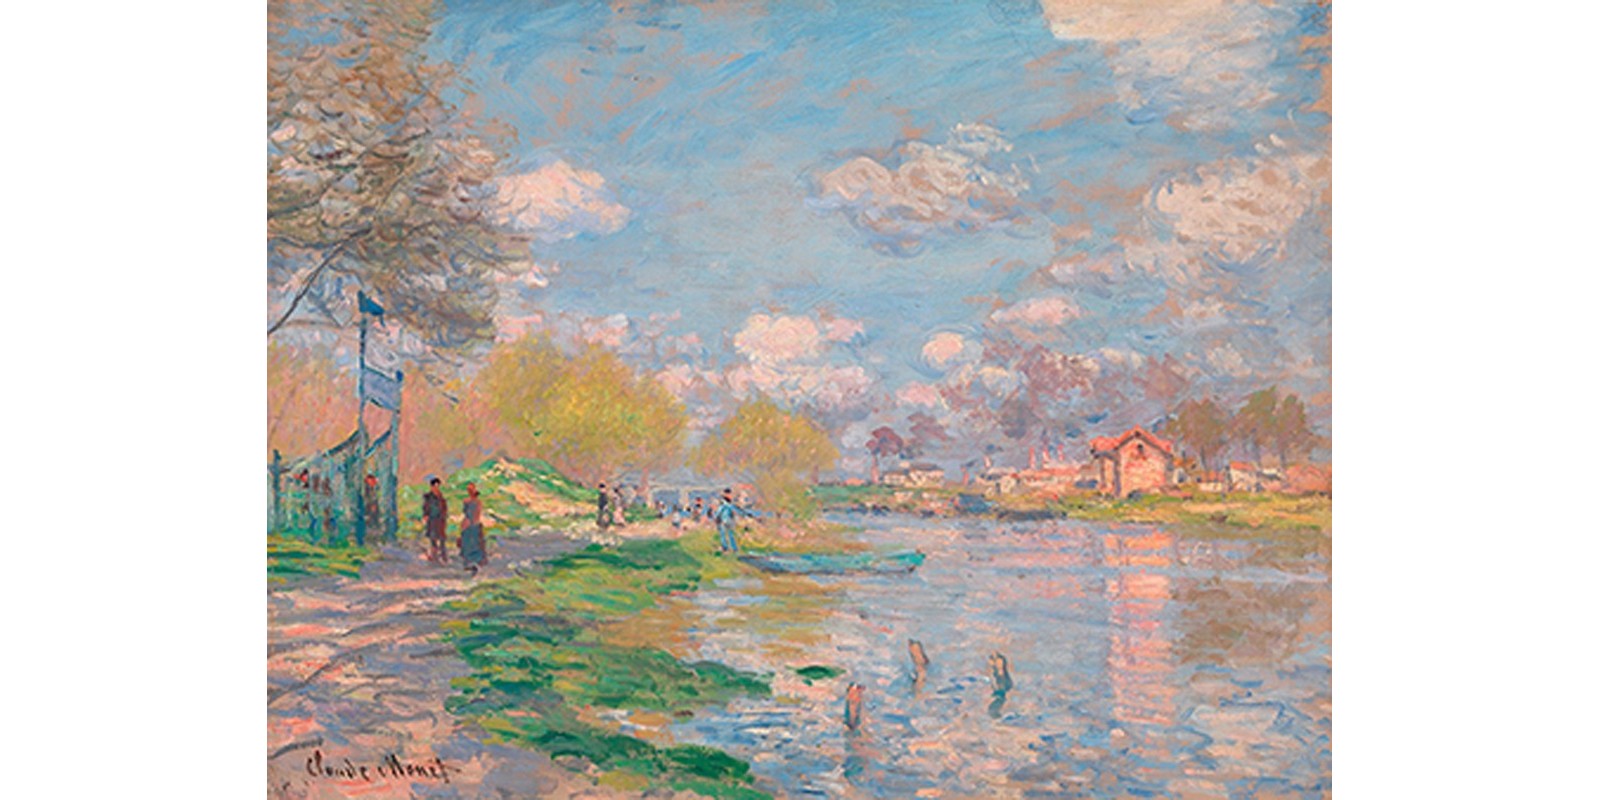 Claude Monet - Spring by the Seine